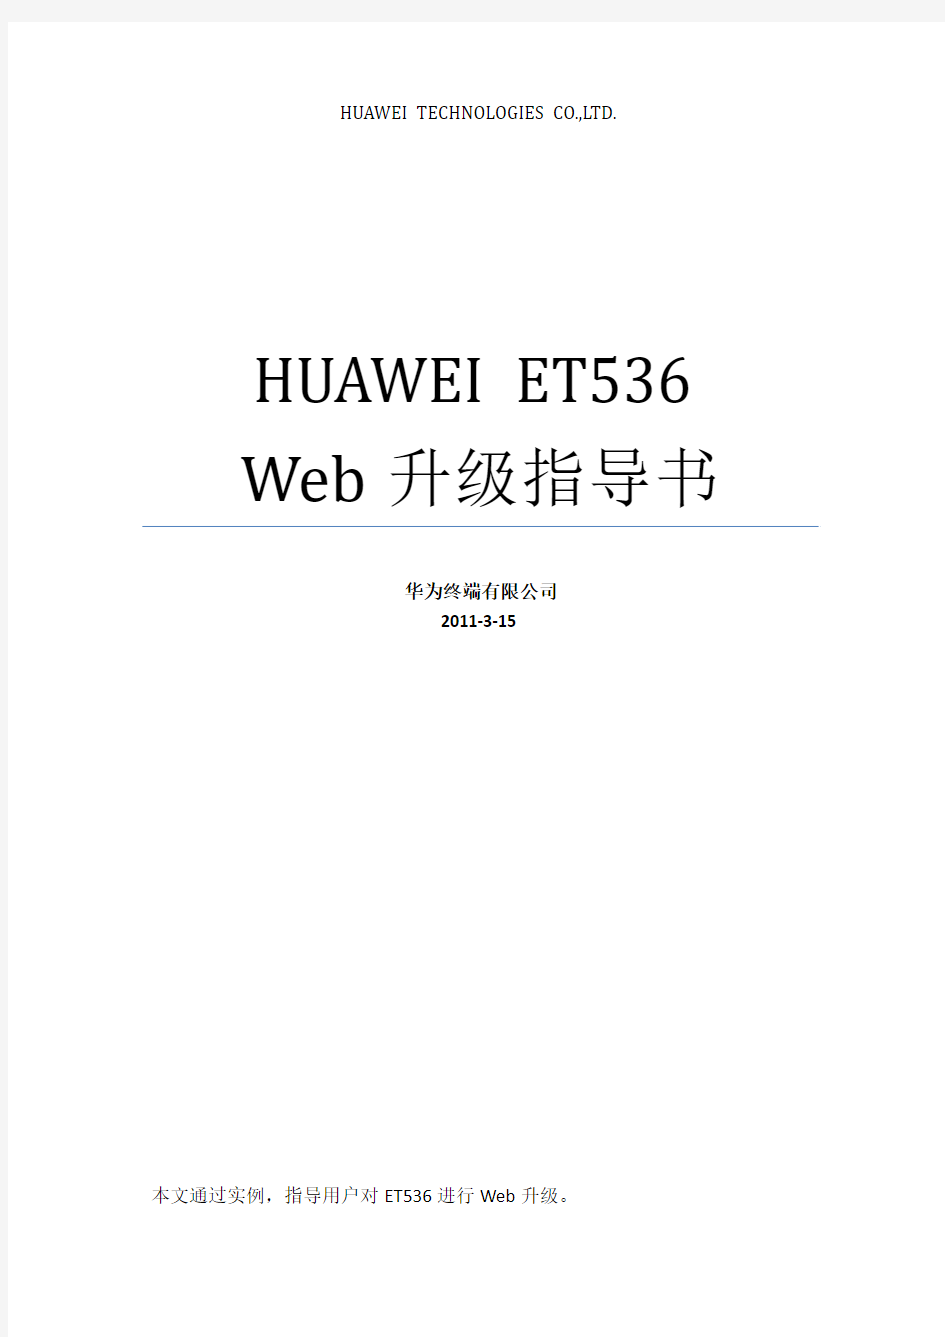 HUAWEI ET536 Web升级指导书